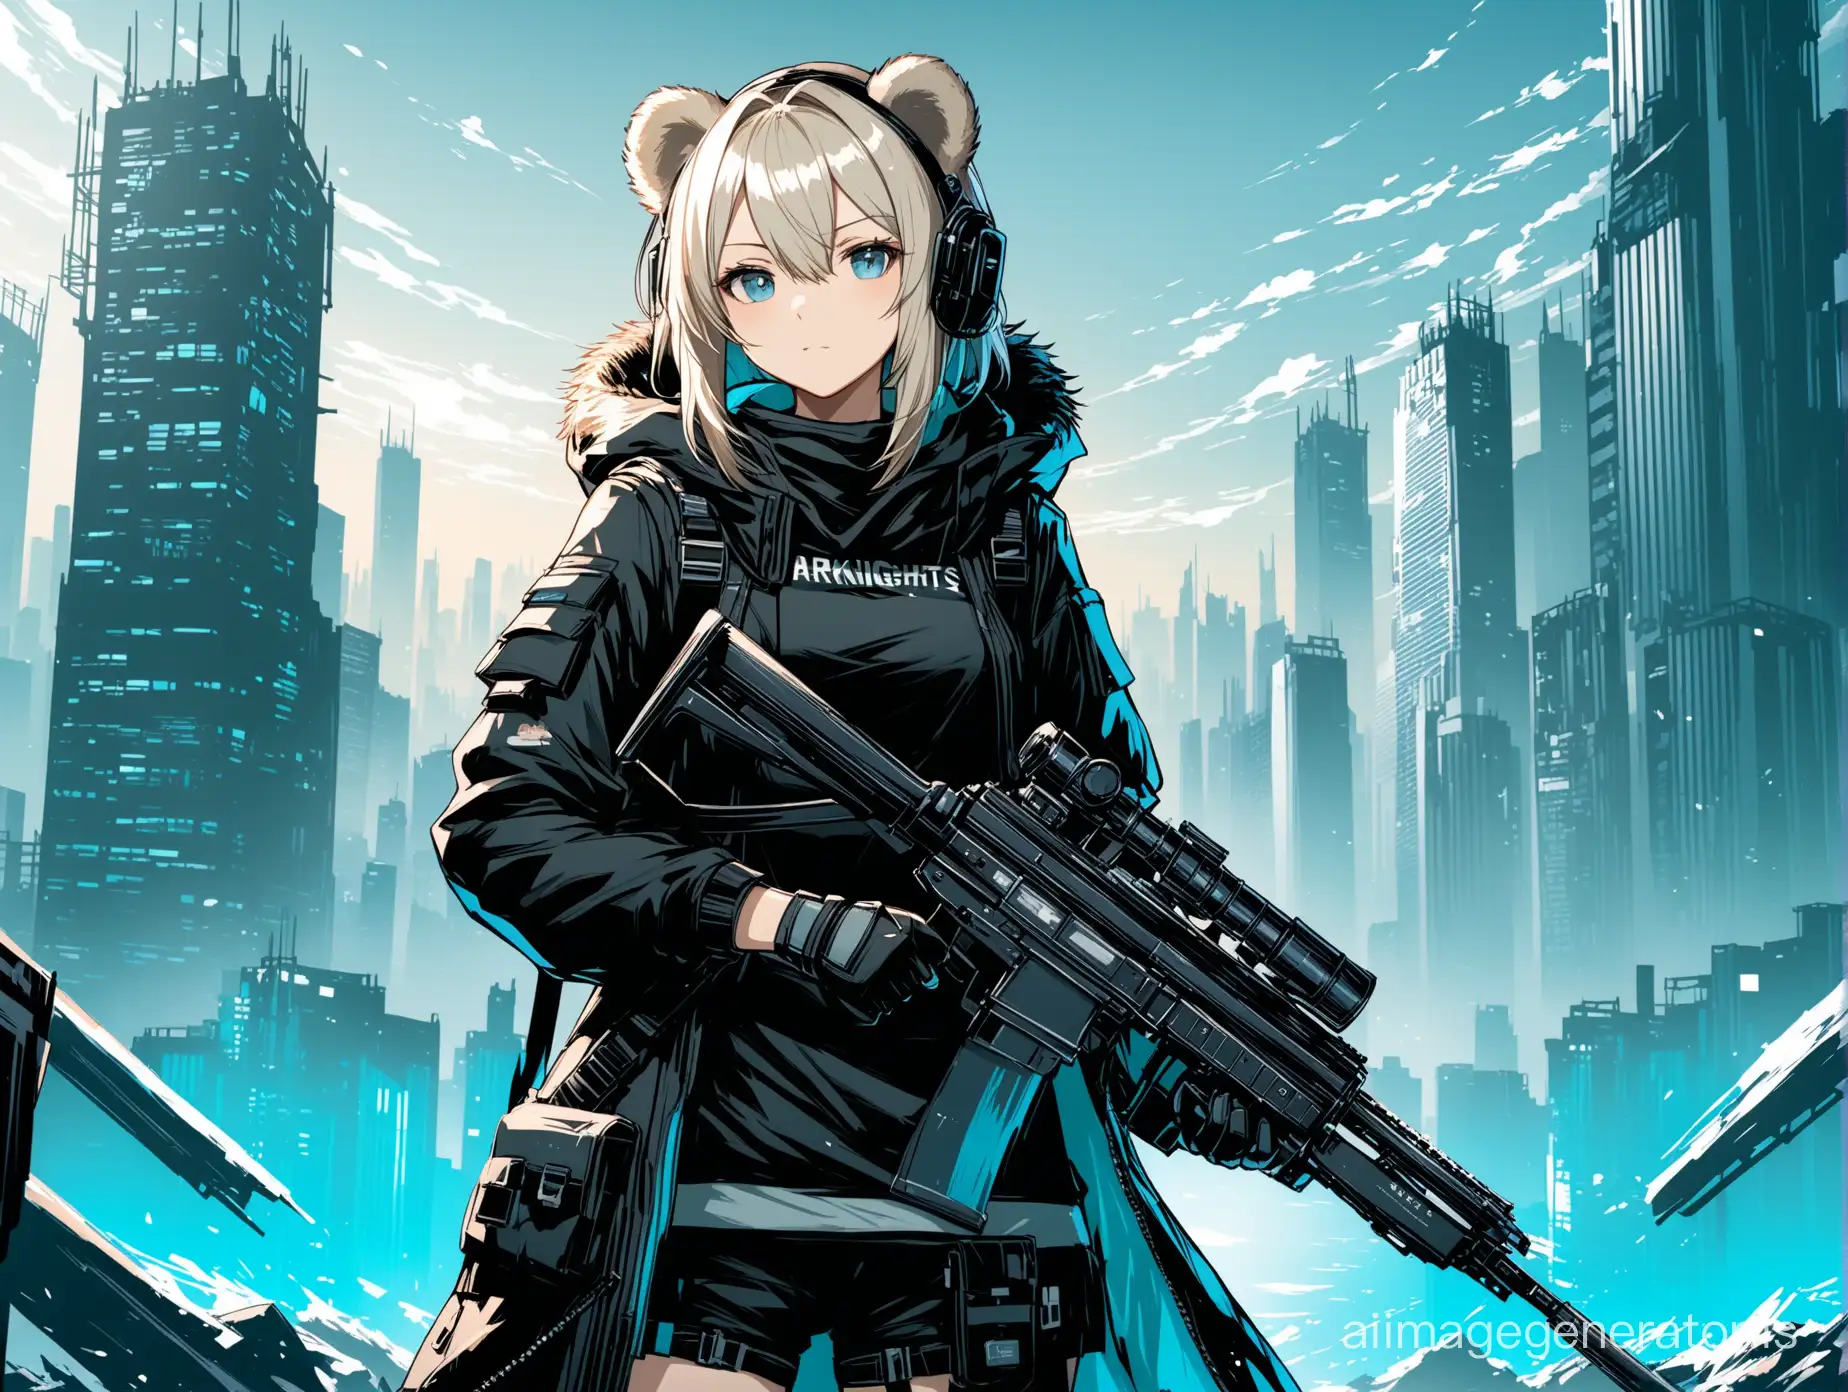 Arknights-Ursus-Operator-in-Urban-Combat-Gear